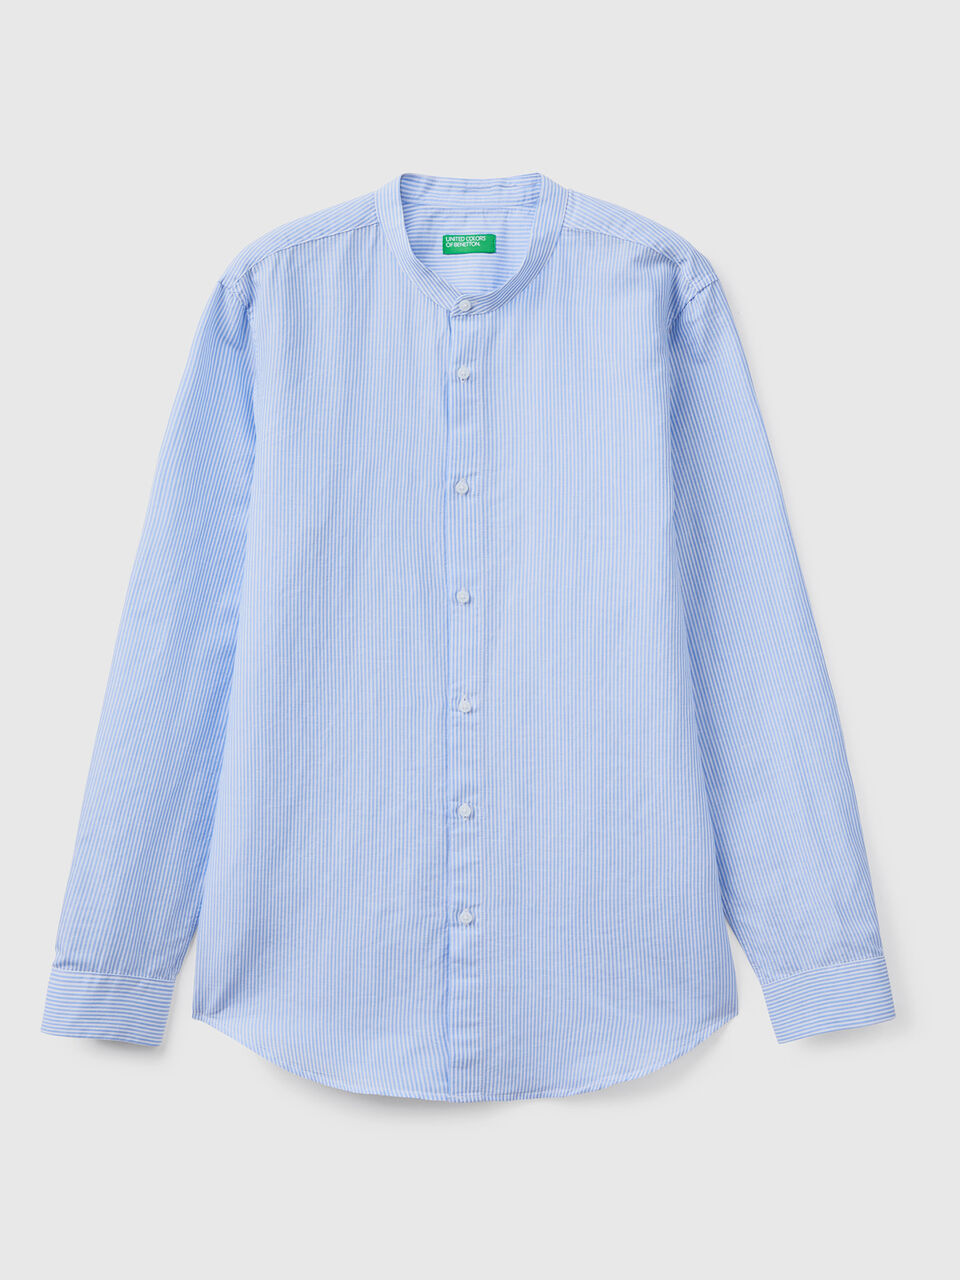 Mandarin collar shirt in linen blend - Sky Blue